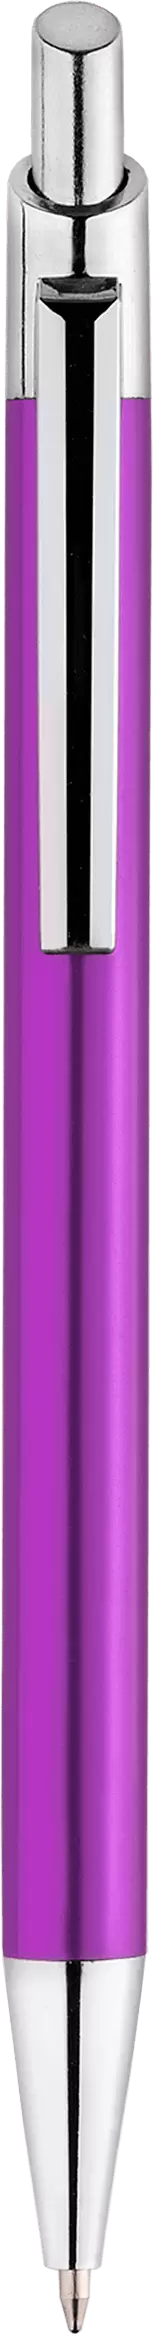 Ручка TIKKO Фиолетовая 2105-11